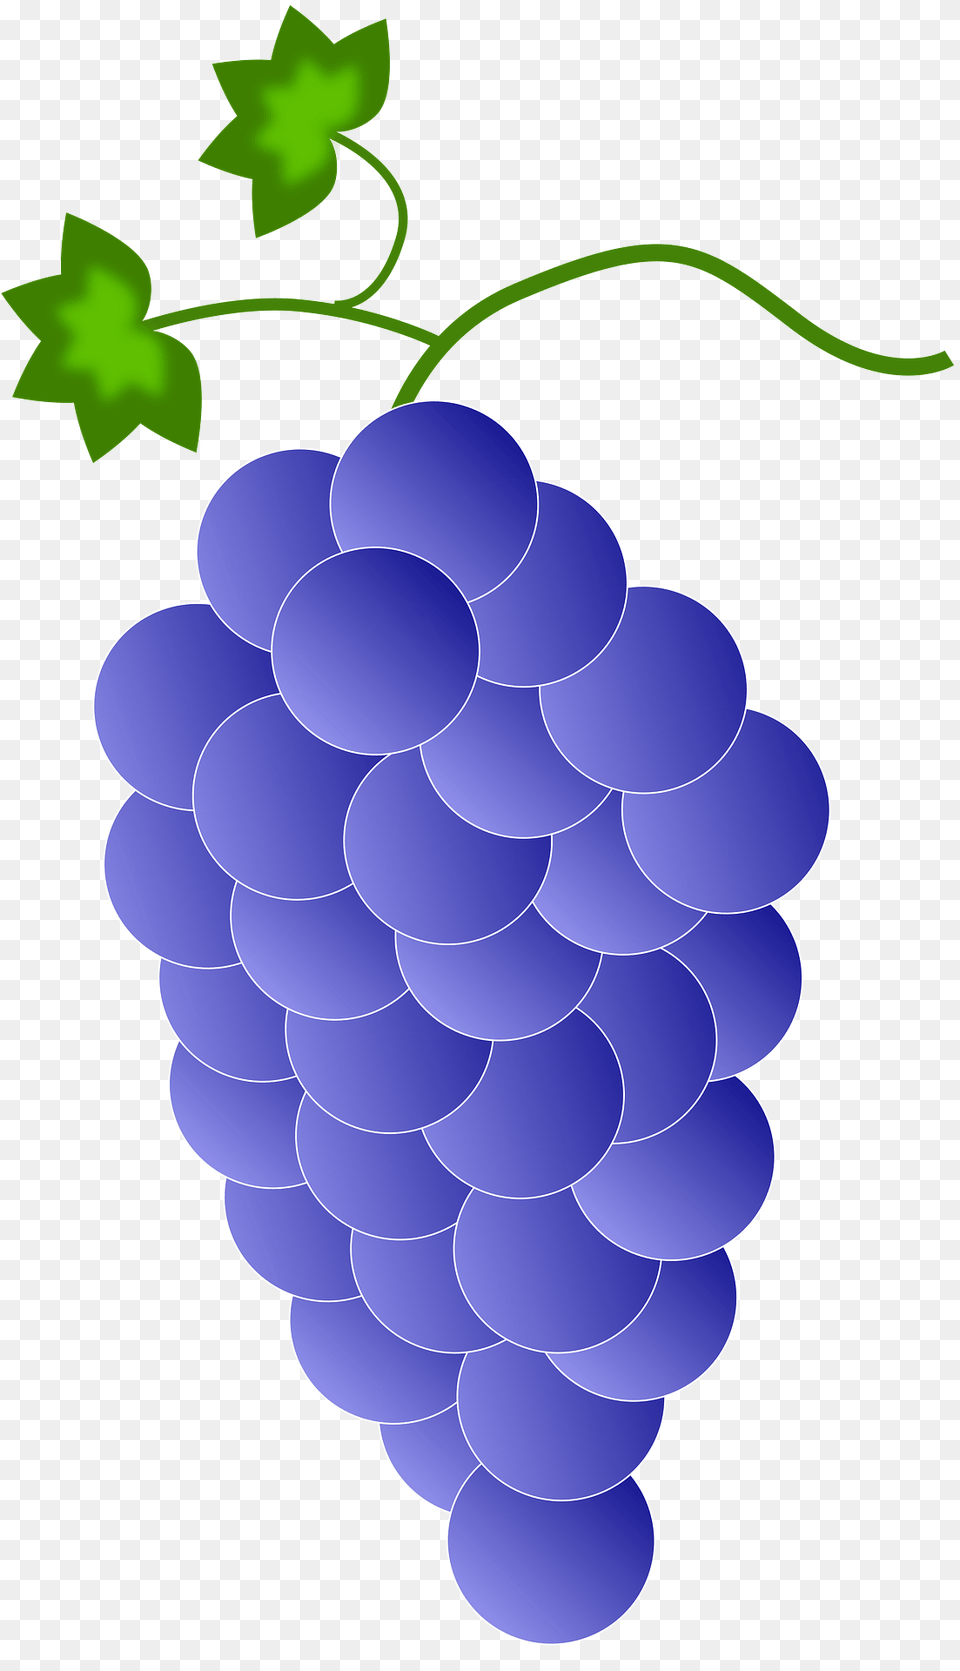 Purple Grapes Clipart, Food, Fruit, Plant, Produce Png